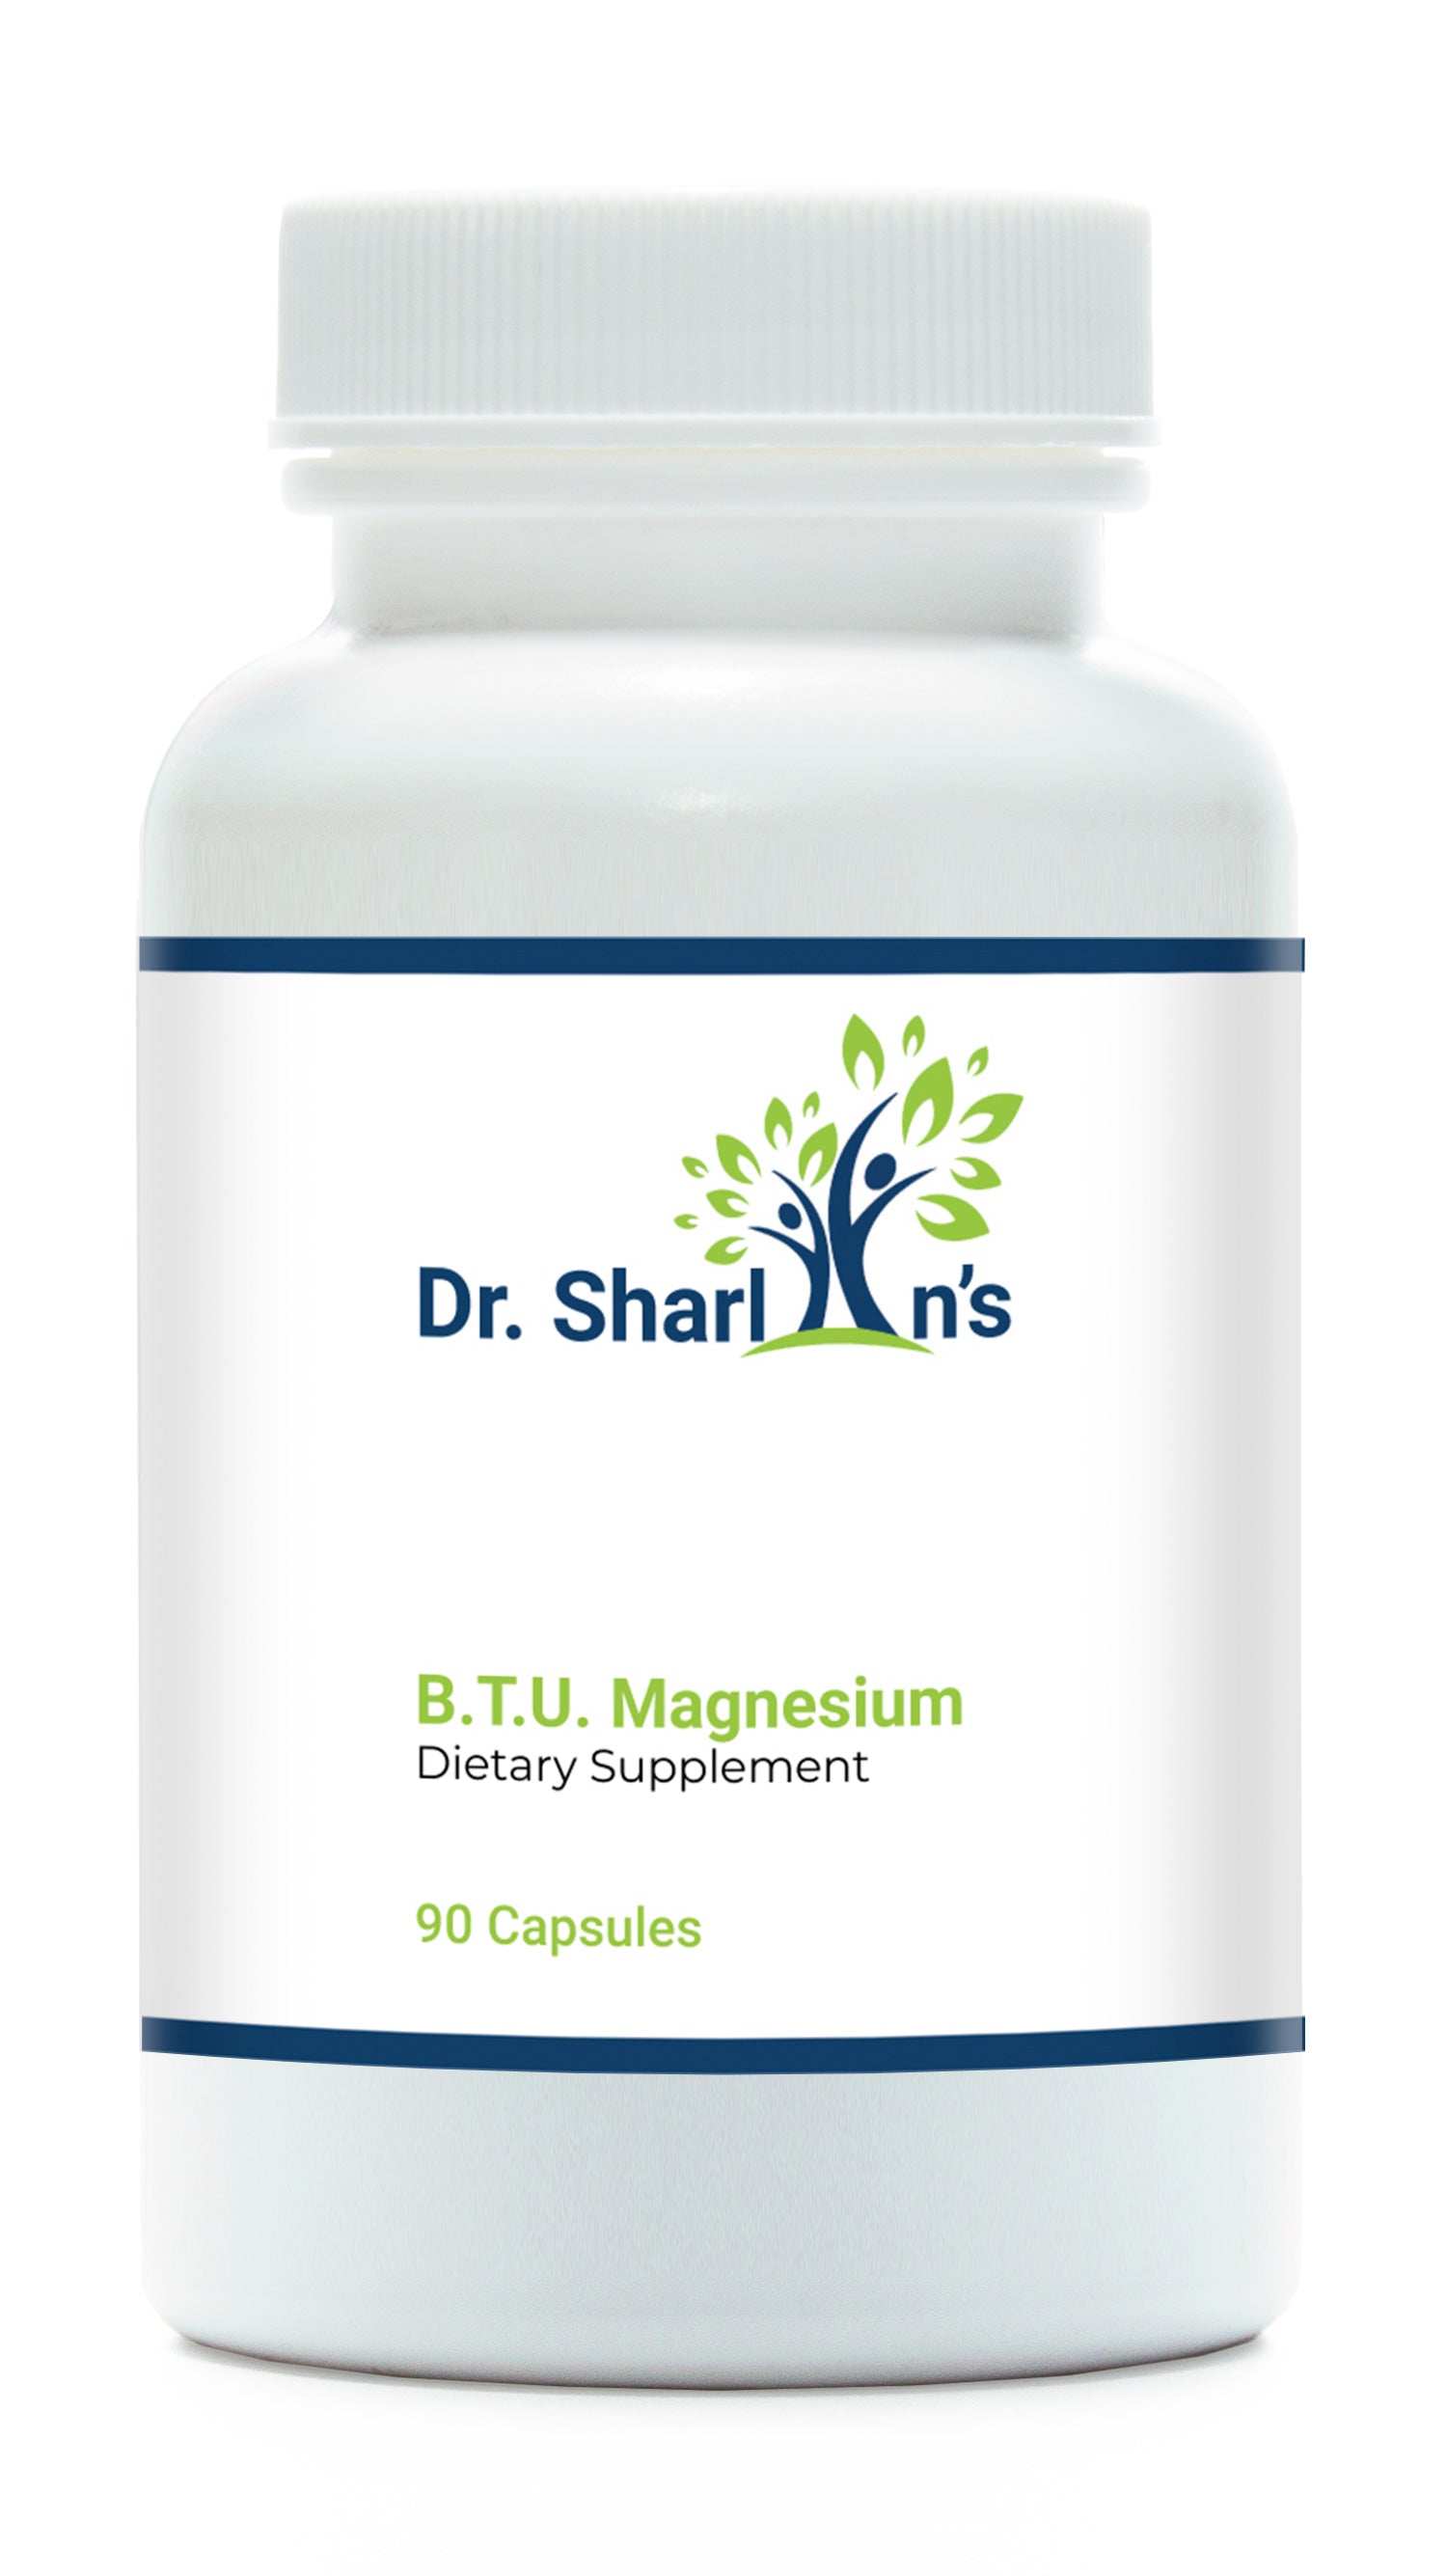 B.T.U. Magnesium